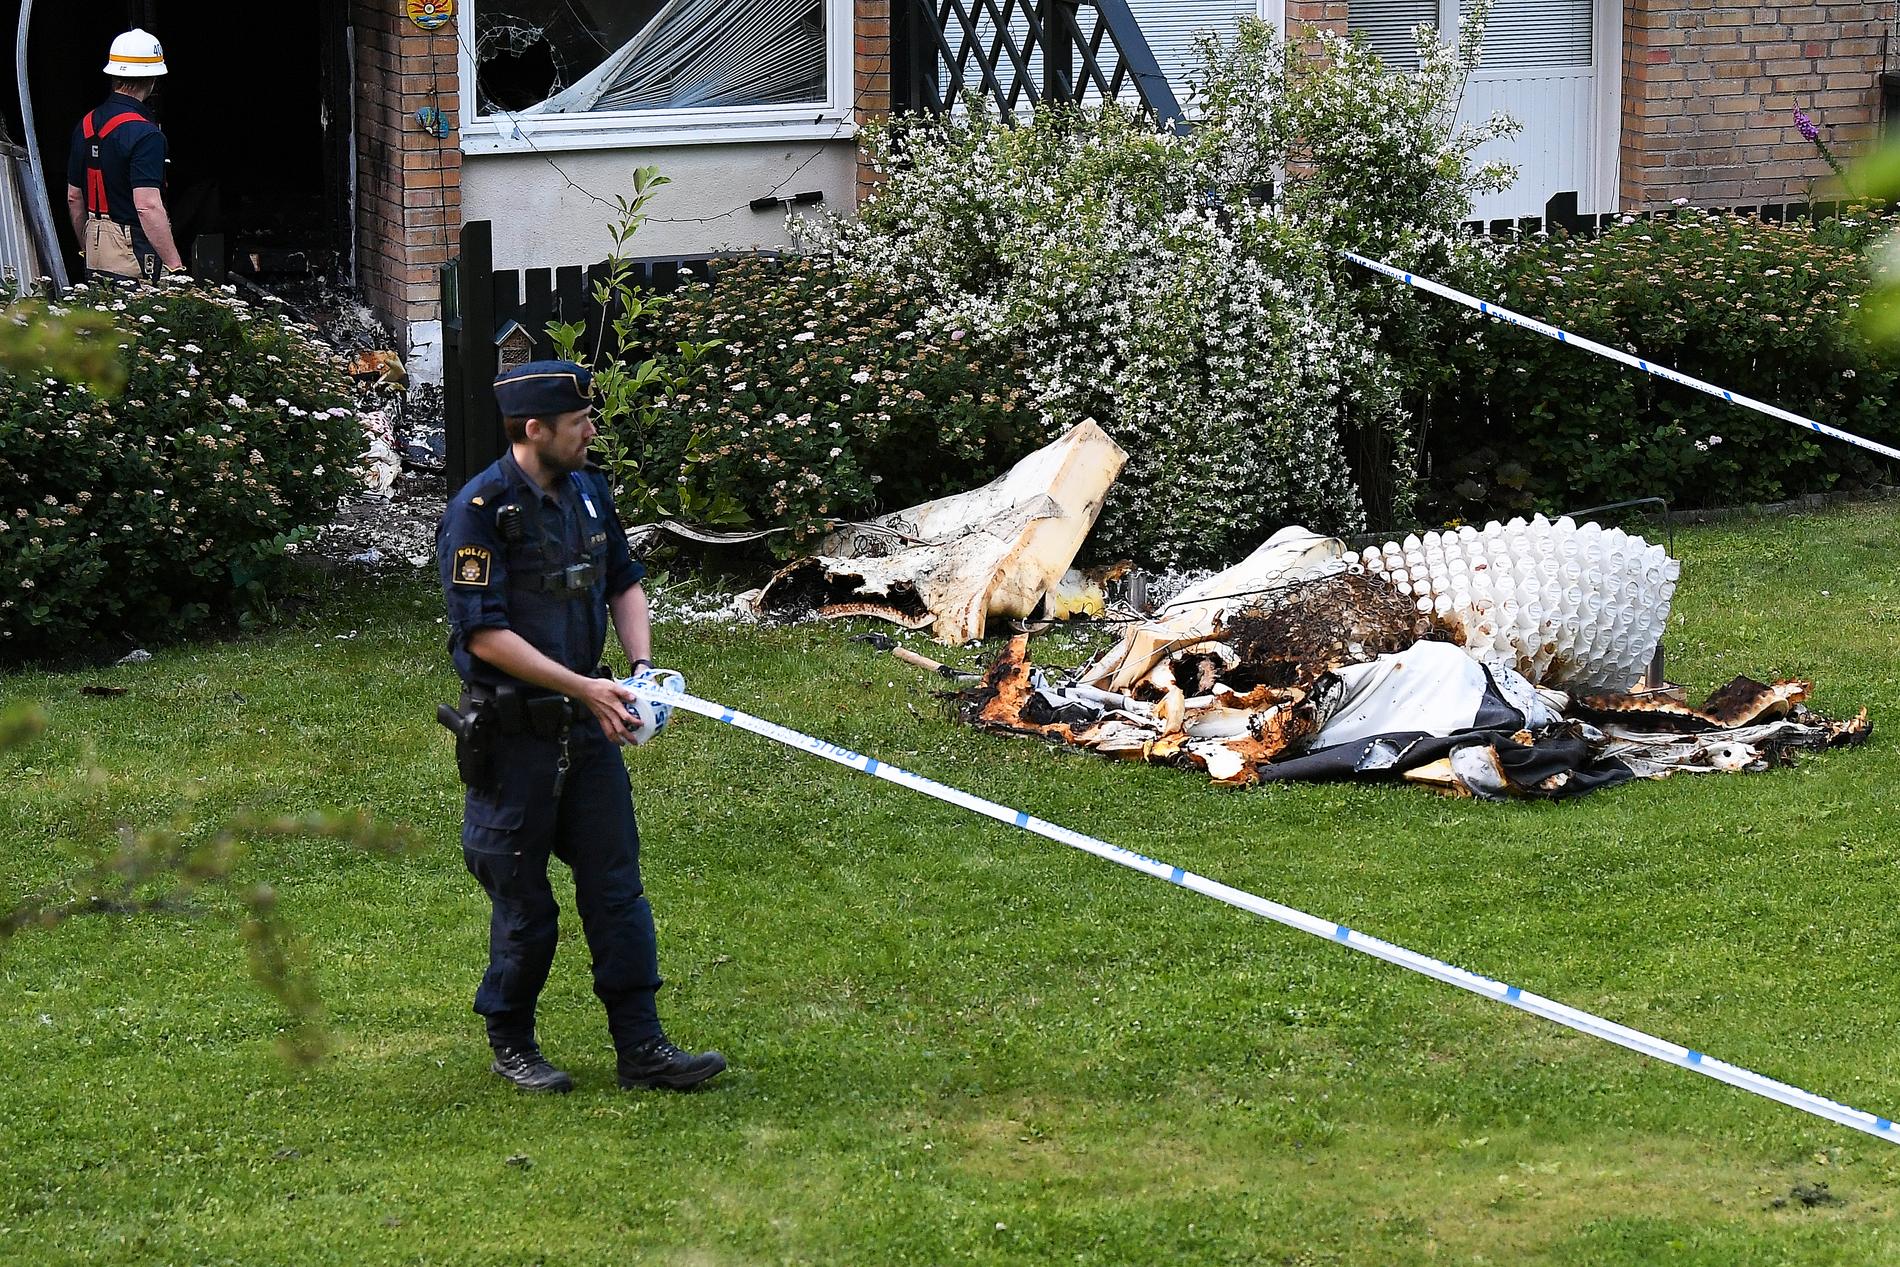 Ett vittne som Aftonbladet har pratat med säger att en man ska ha krossat en fönsterruta och satt eld på bostaden.